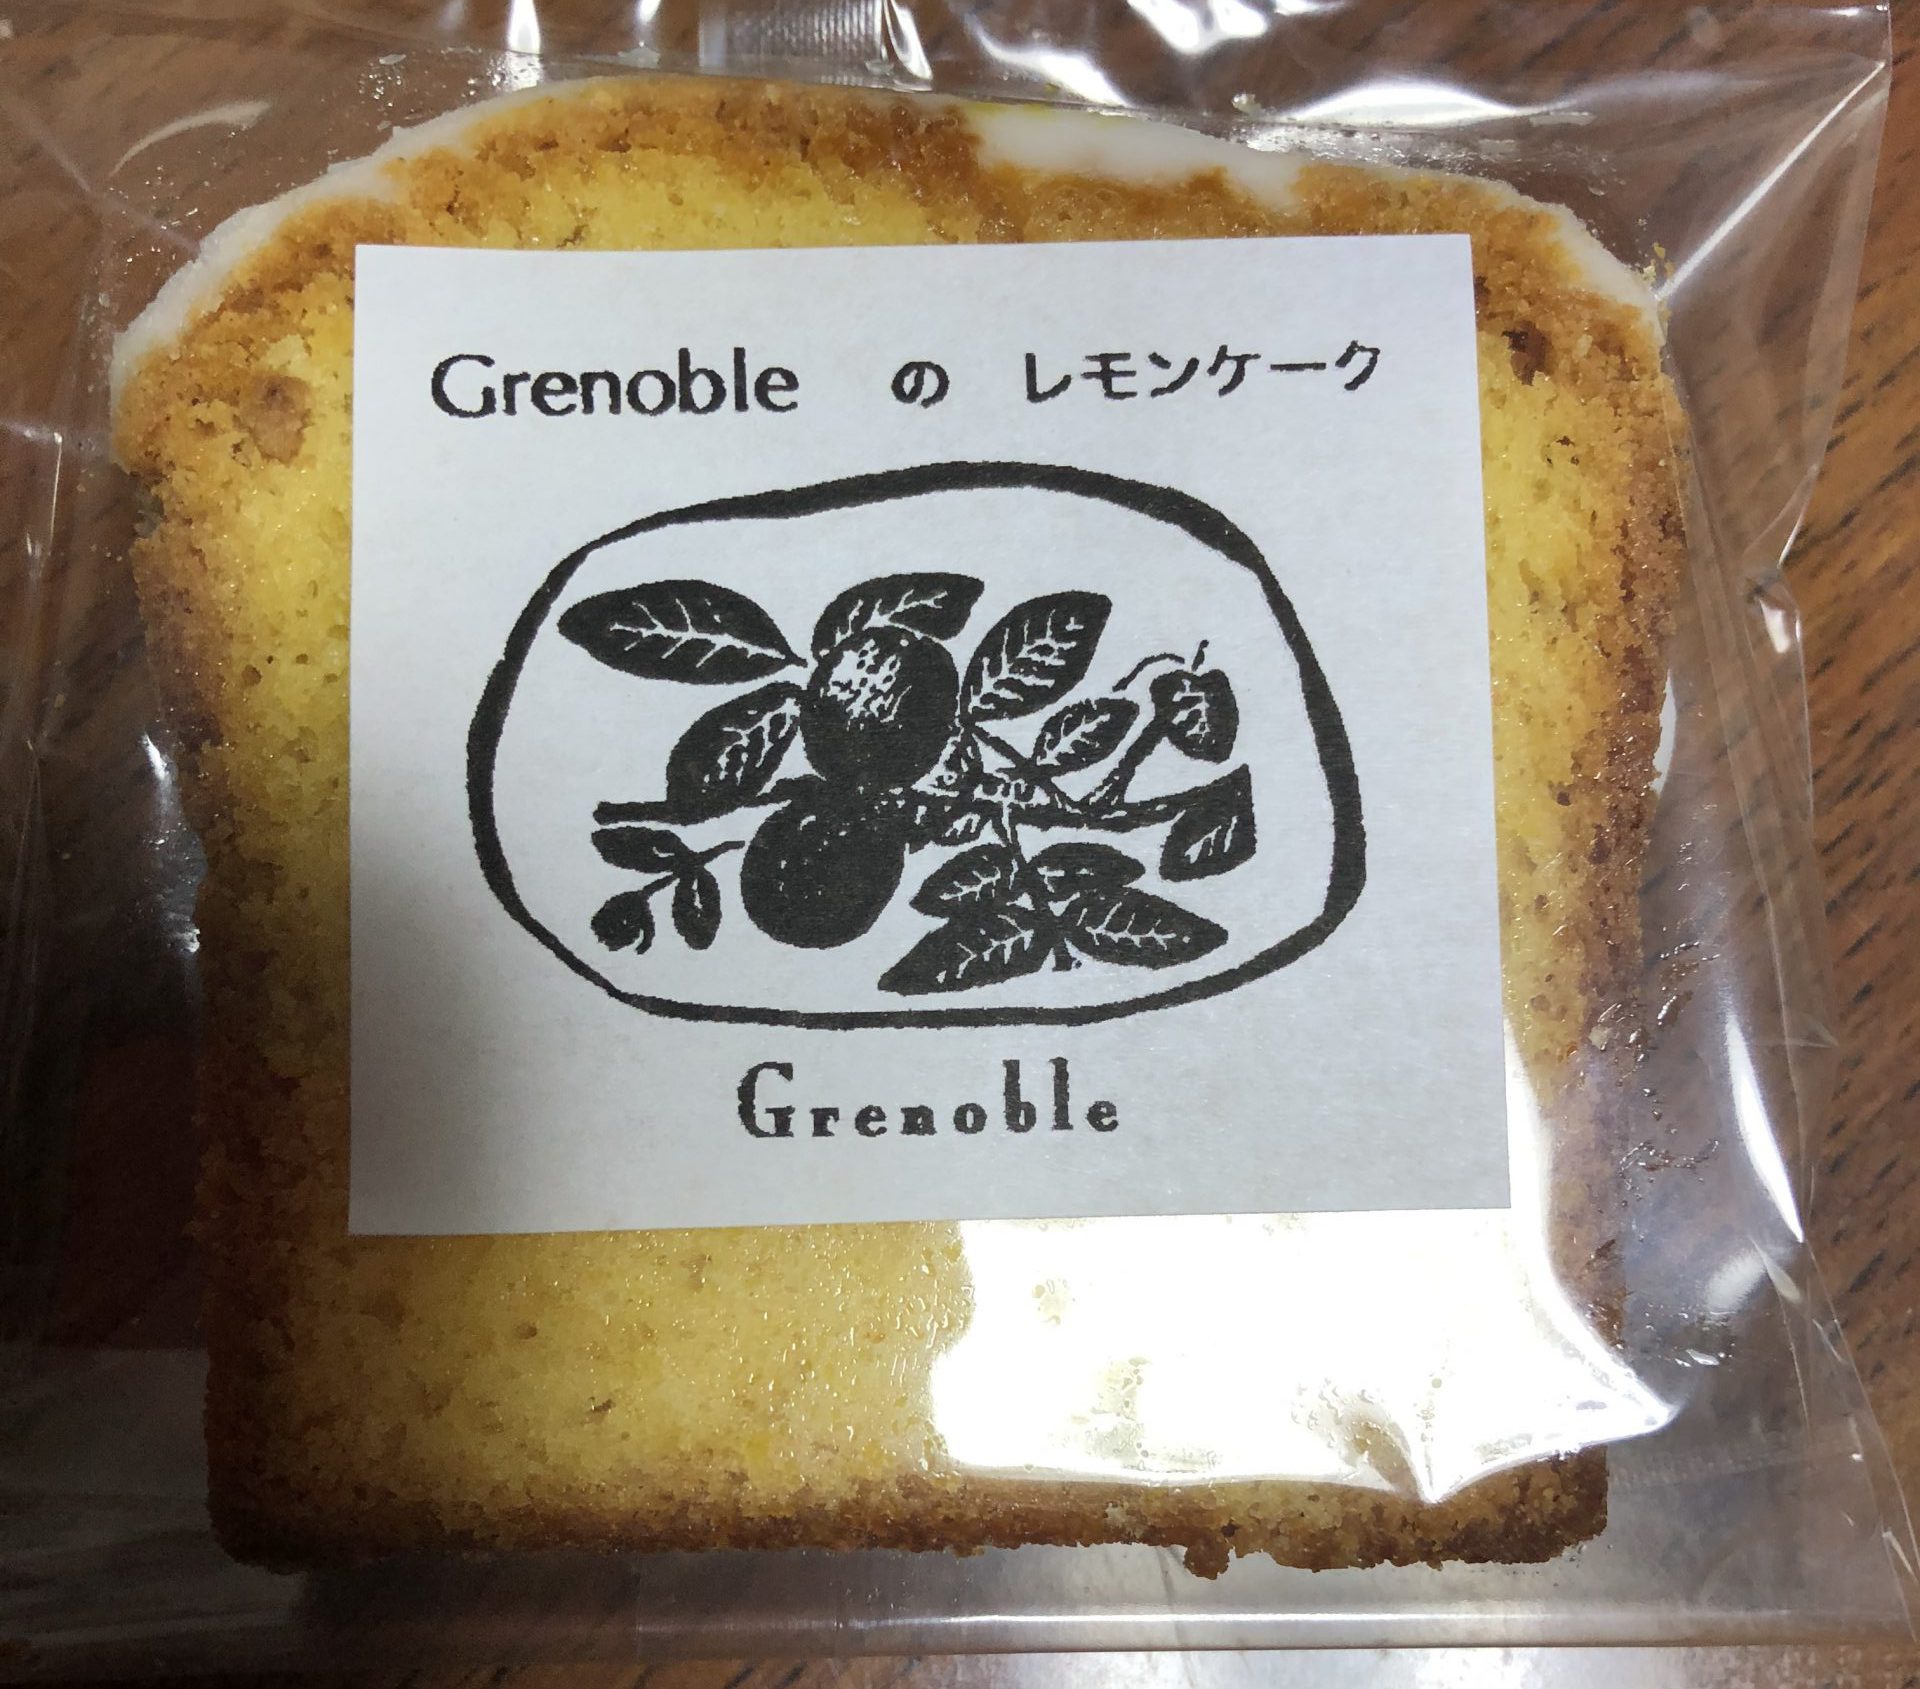 Grenoble グルノーブル 静岡鷹匠のおしゃれレモンケーキ テイクアウト ふらふらもぐもぐ 静岡をメインとしたのんきなグルメブログ